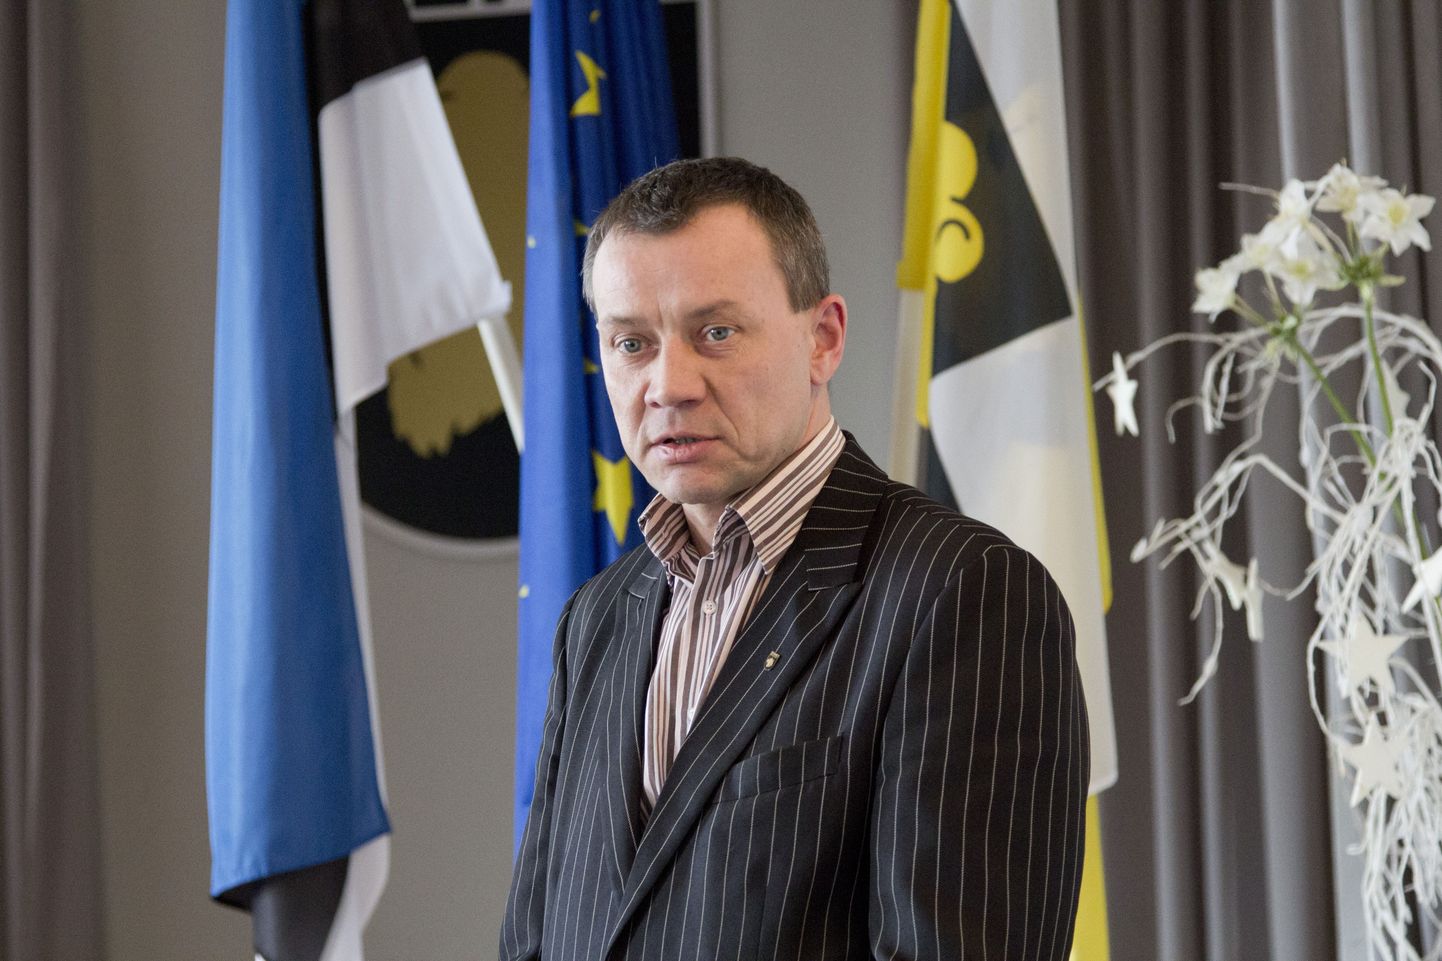 Otepää volikogu esimees Jaanus Raidal sihib europarlamendi saadiku kohta.